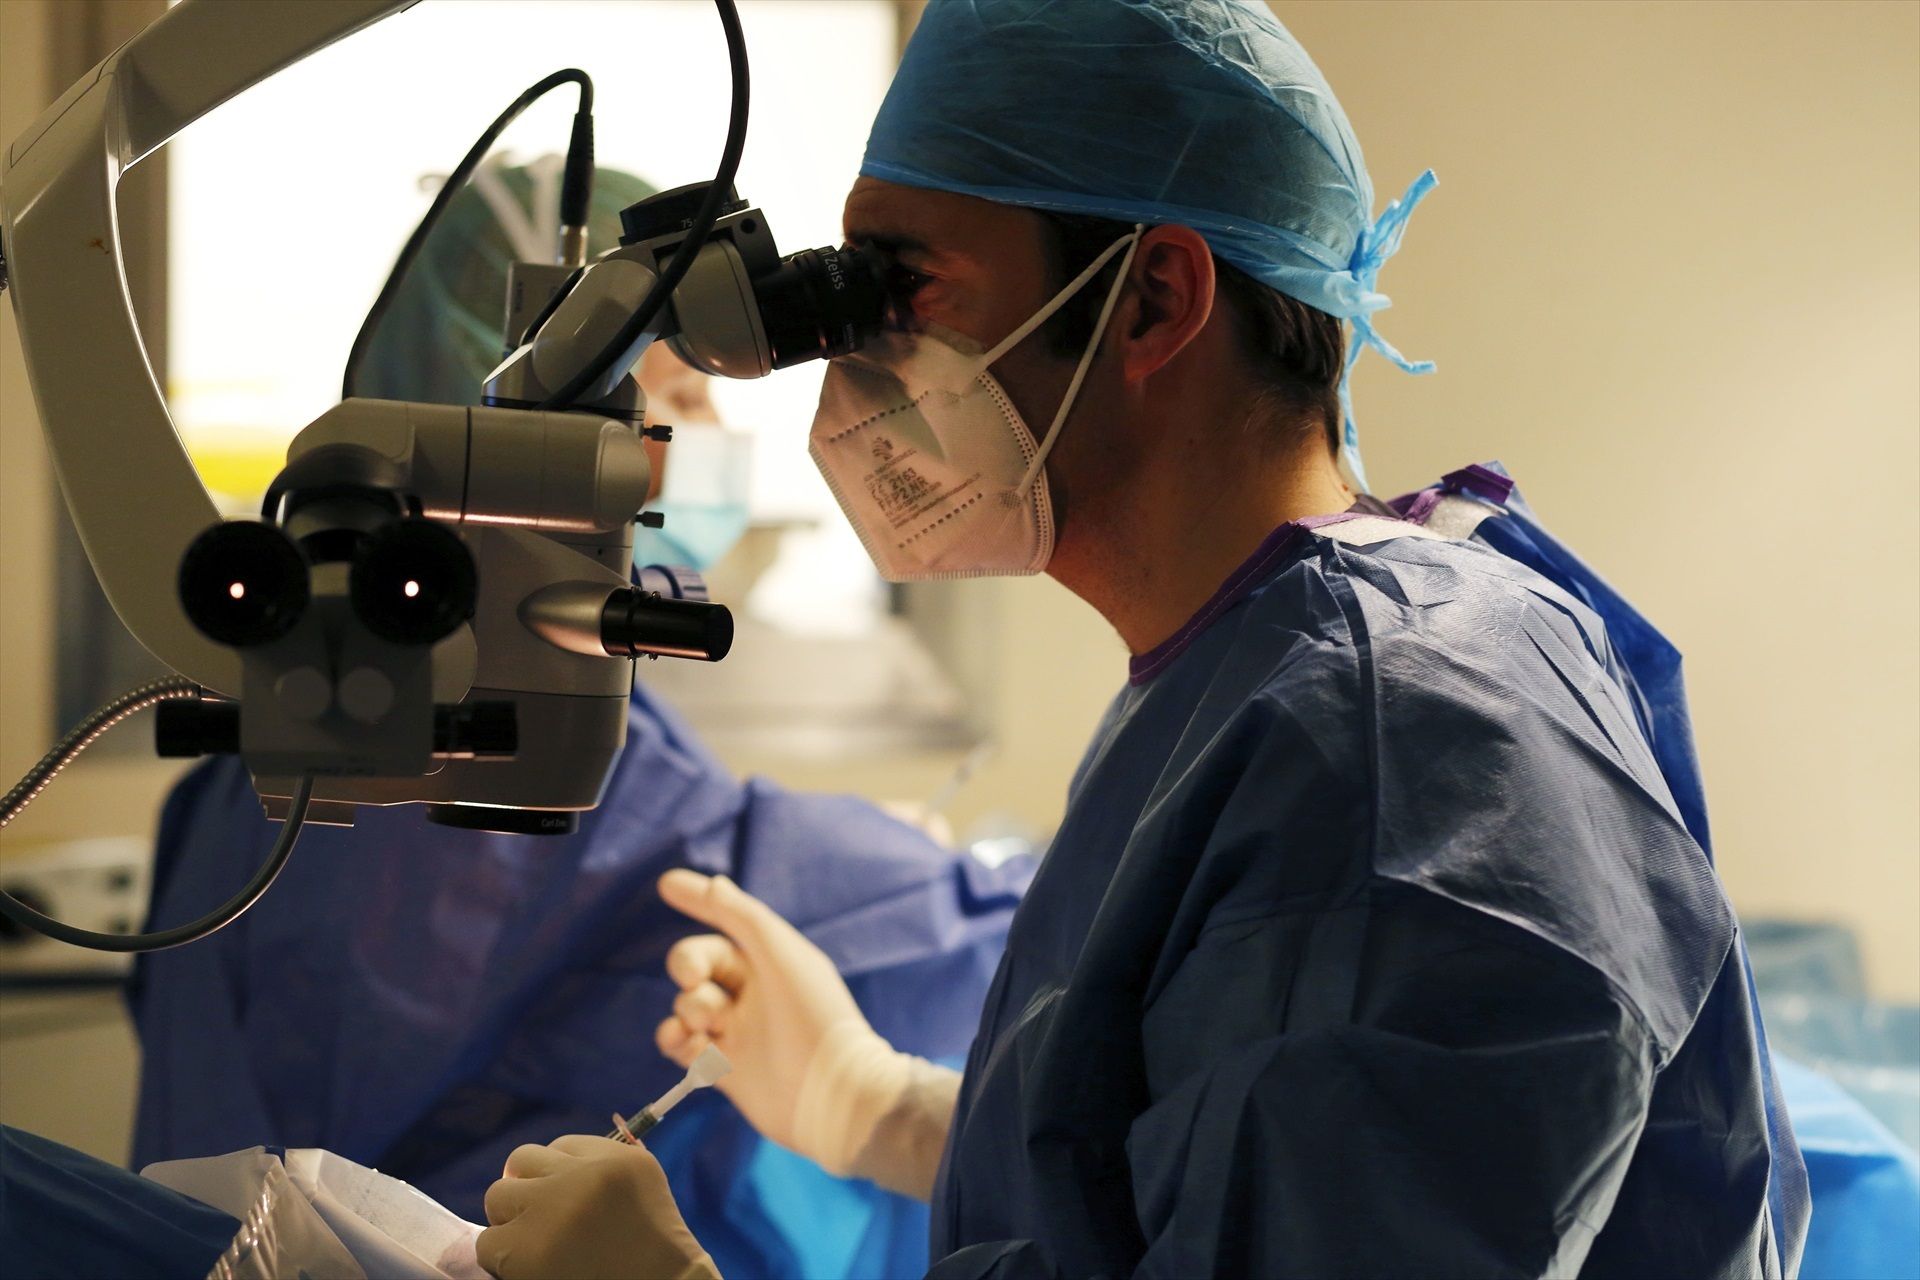 Un fármaco renal obtiene resultados prometedores para el glaucoma (Europa Press)